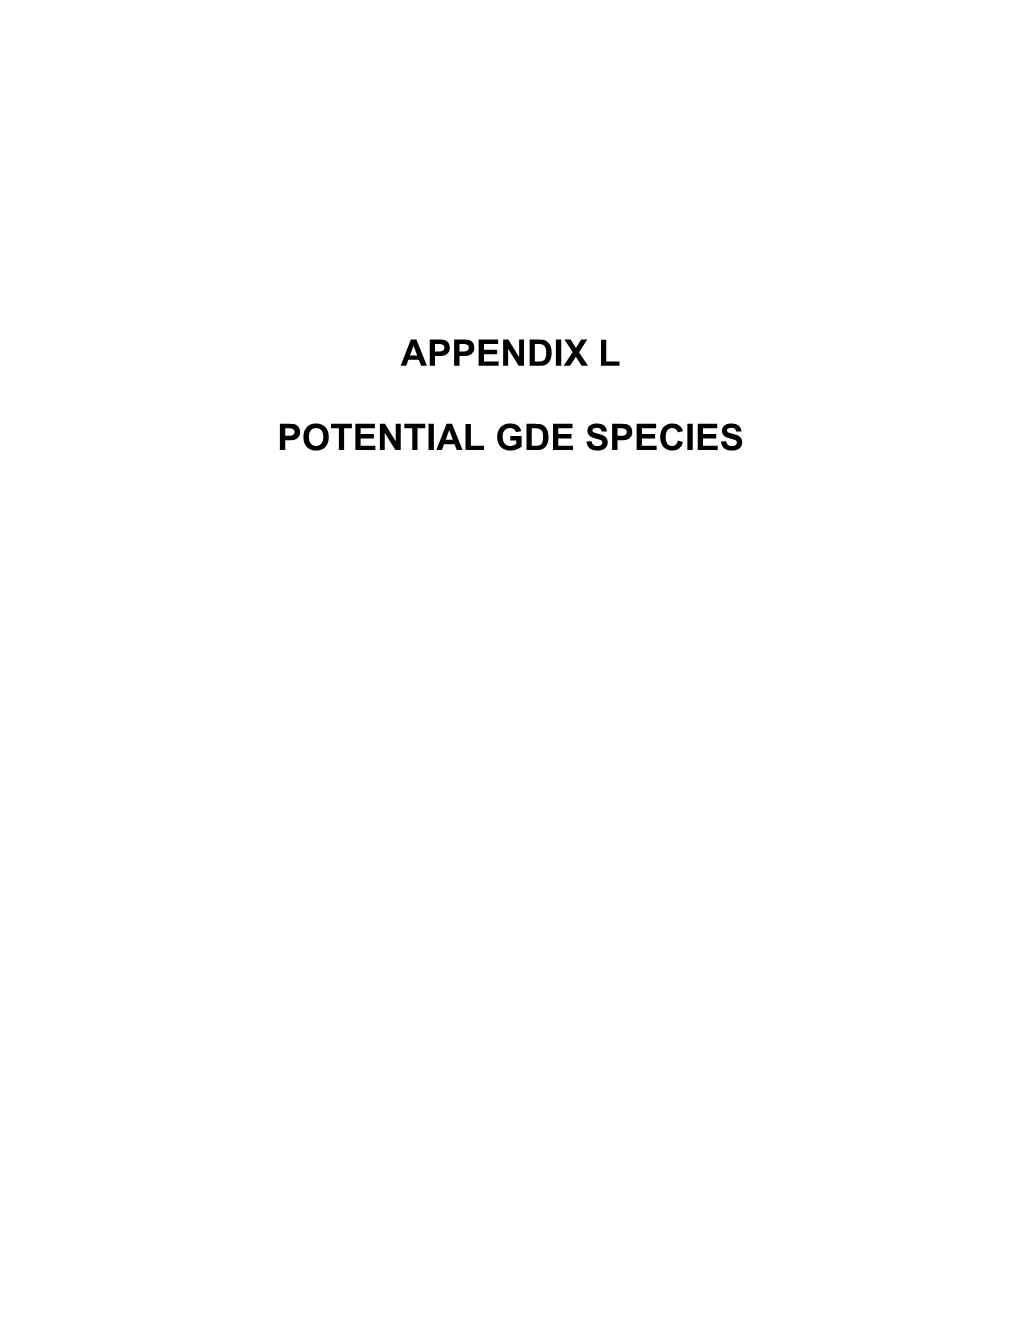 Appendix L Potential Gde Species